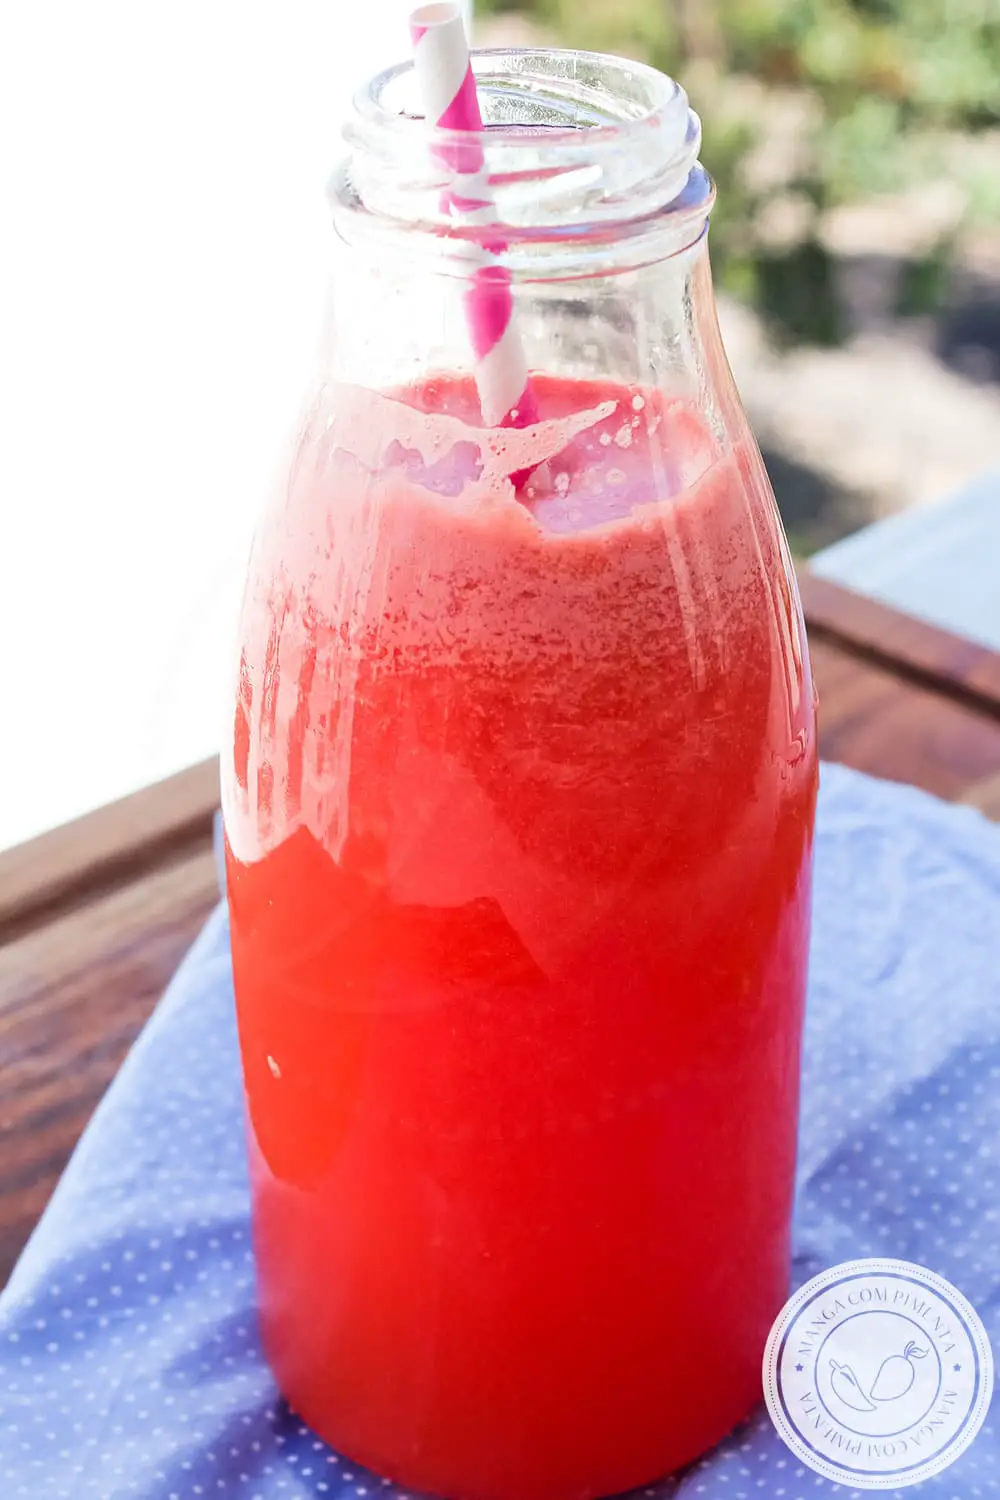 Aprenda a fazer uma Limonada de Melancia - bebida delícia para se refrescar nesse calor!